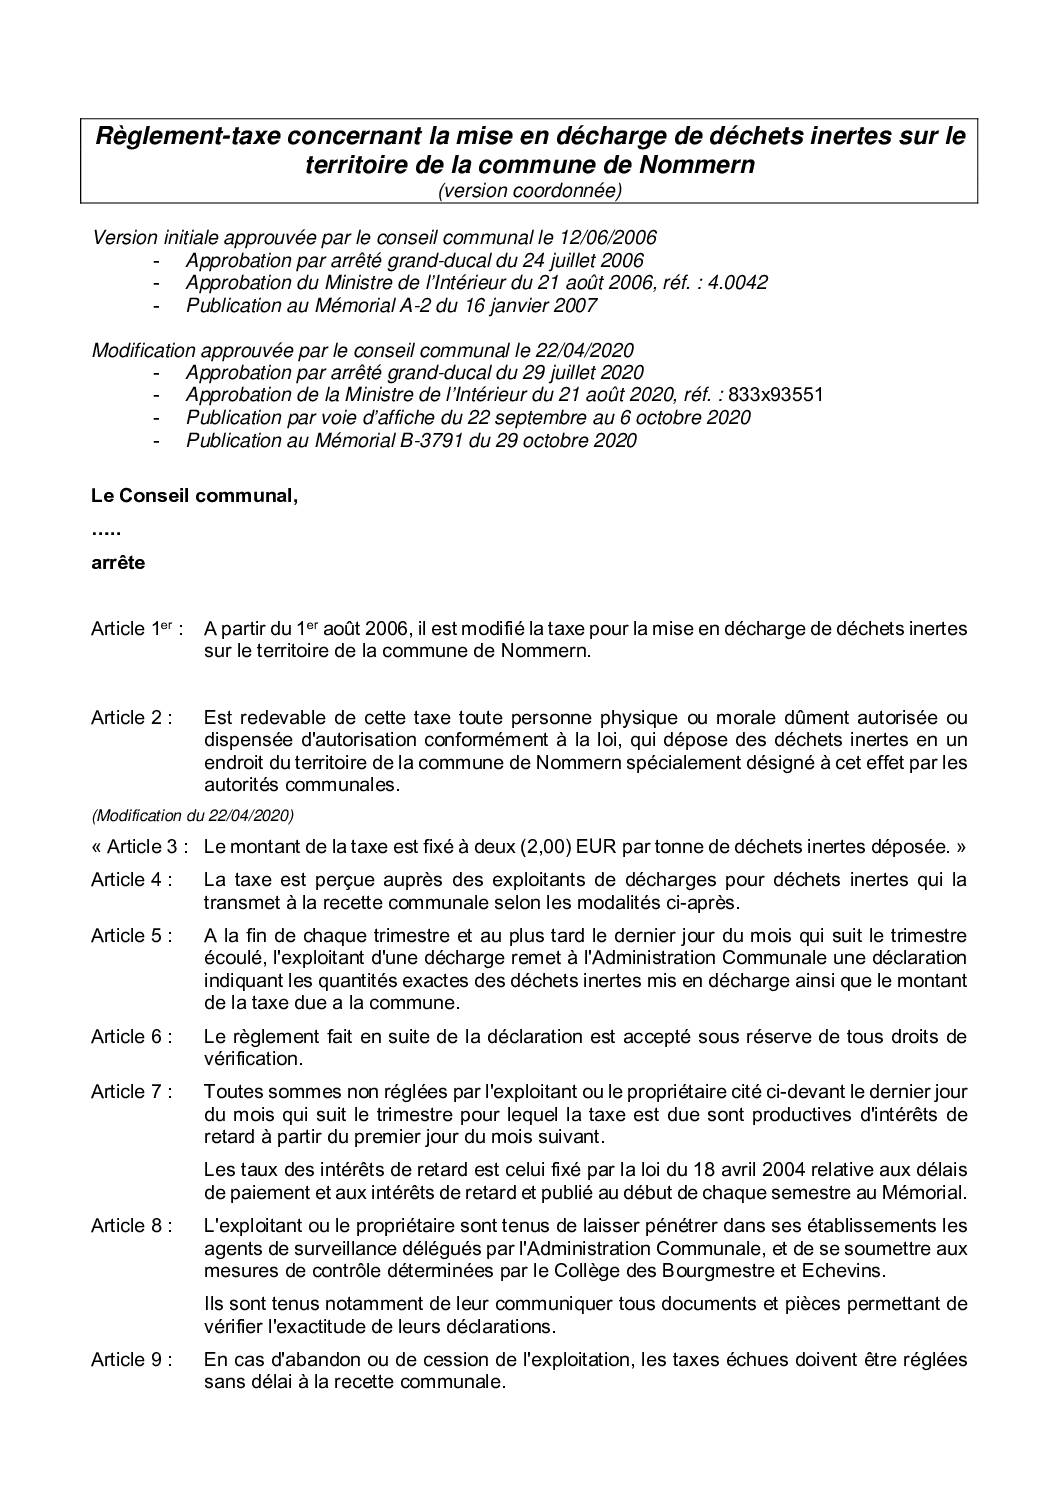 Règlement-taxe du 12 juin 2006 concernant la mise en décharge de déchets inertes sur le territoire de la commune de Nommern